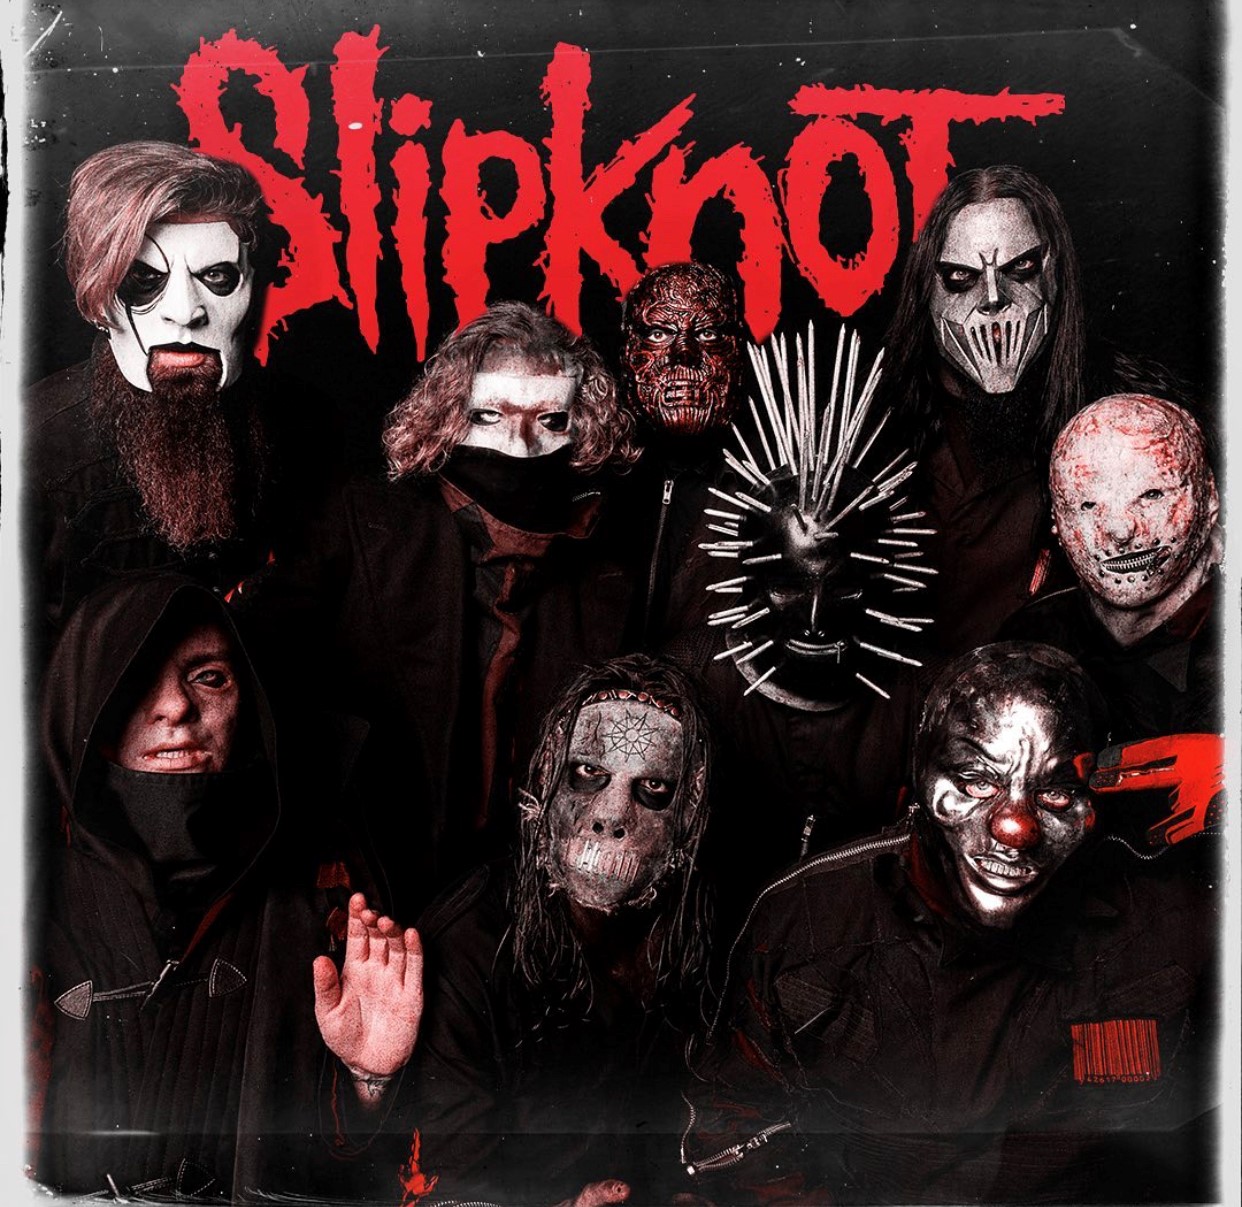 Concerto de Slipknot em Portugal cancelado